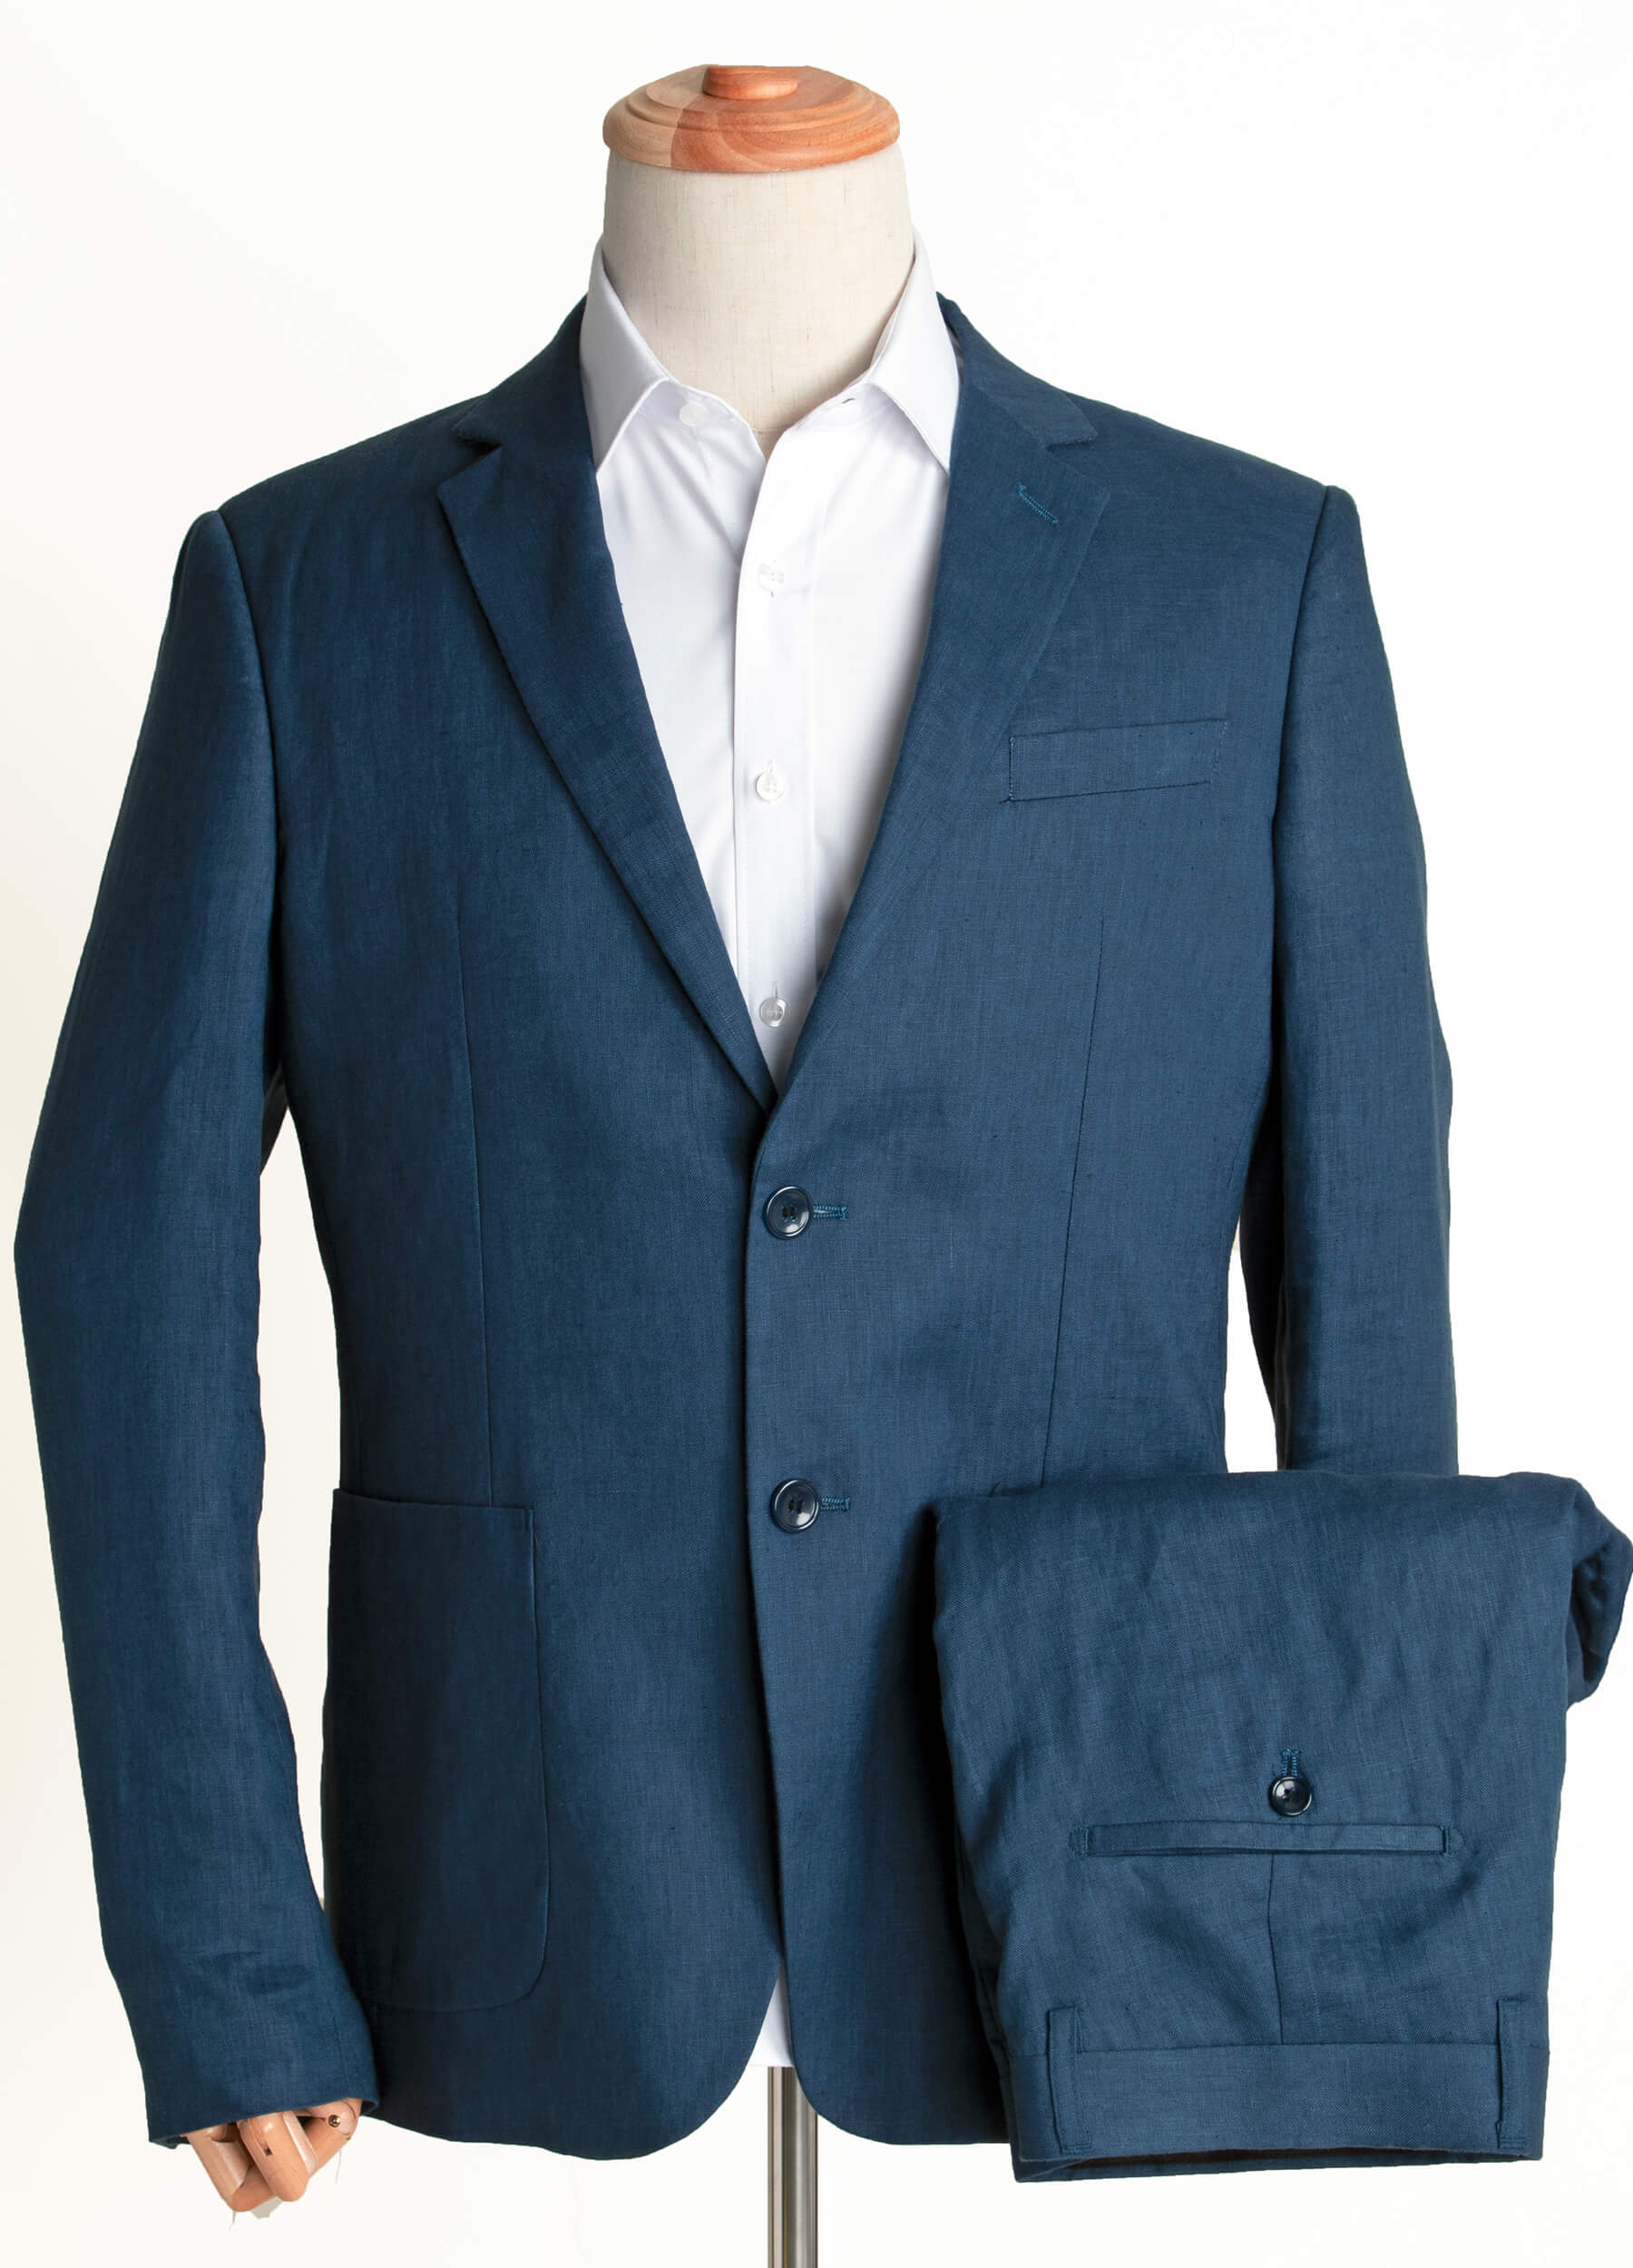 Navy Blue Men Linen Suit